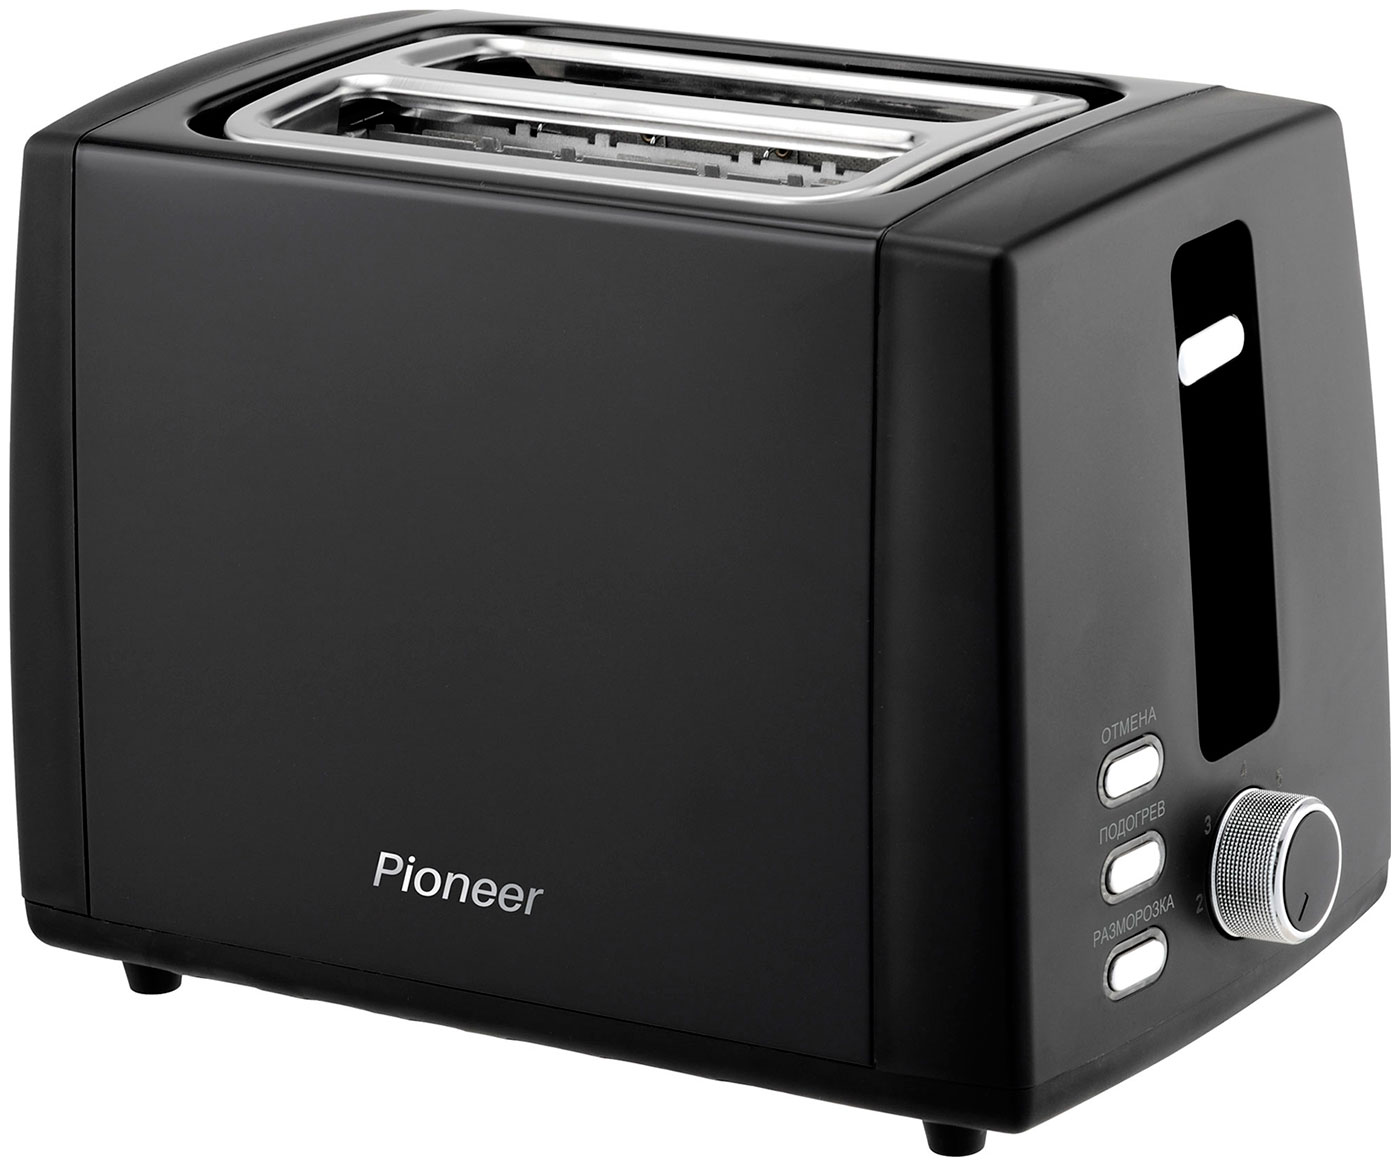 Тостер Pioneer TS155 тостер pioneer на 2 тоста 7 уровней поджаривания функции подогрева и размораживания решетка для подогрева булочек 850 вт